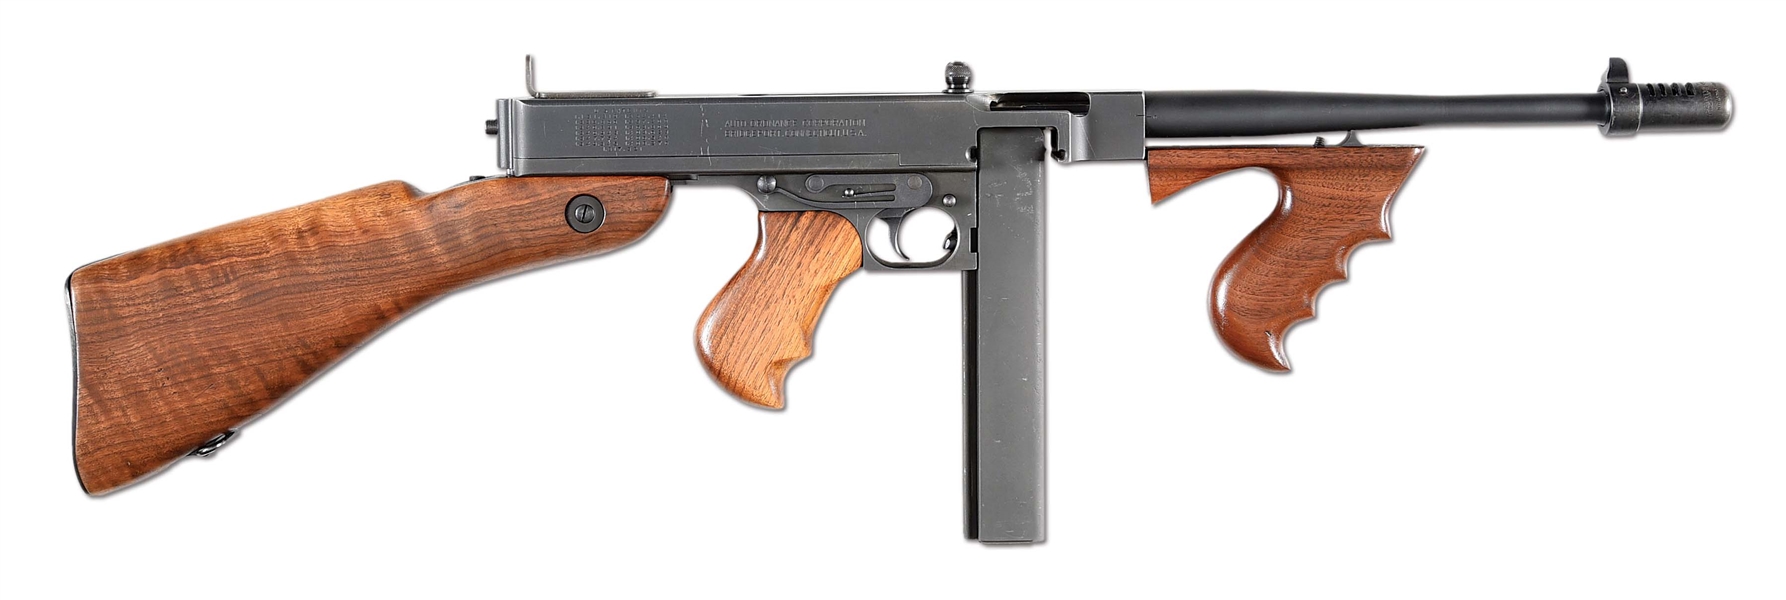 (N) VERY ATTRACTIVE AUTO ORDNANCE THOMPSON MODEL 1928 AC MACHINE GUN (CURIO & RELIC).